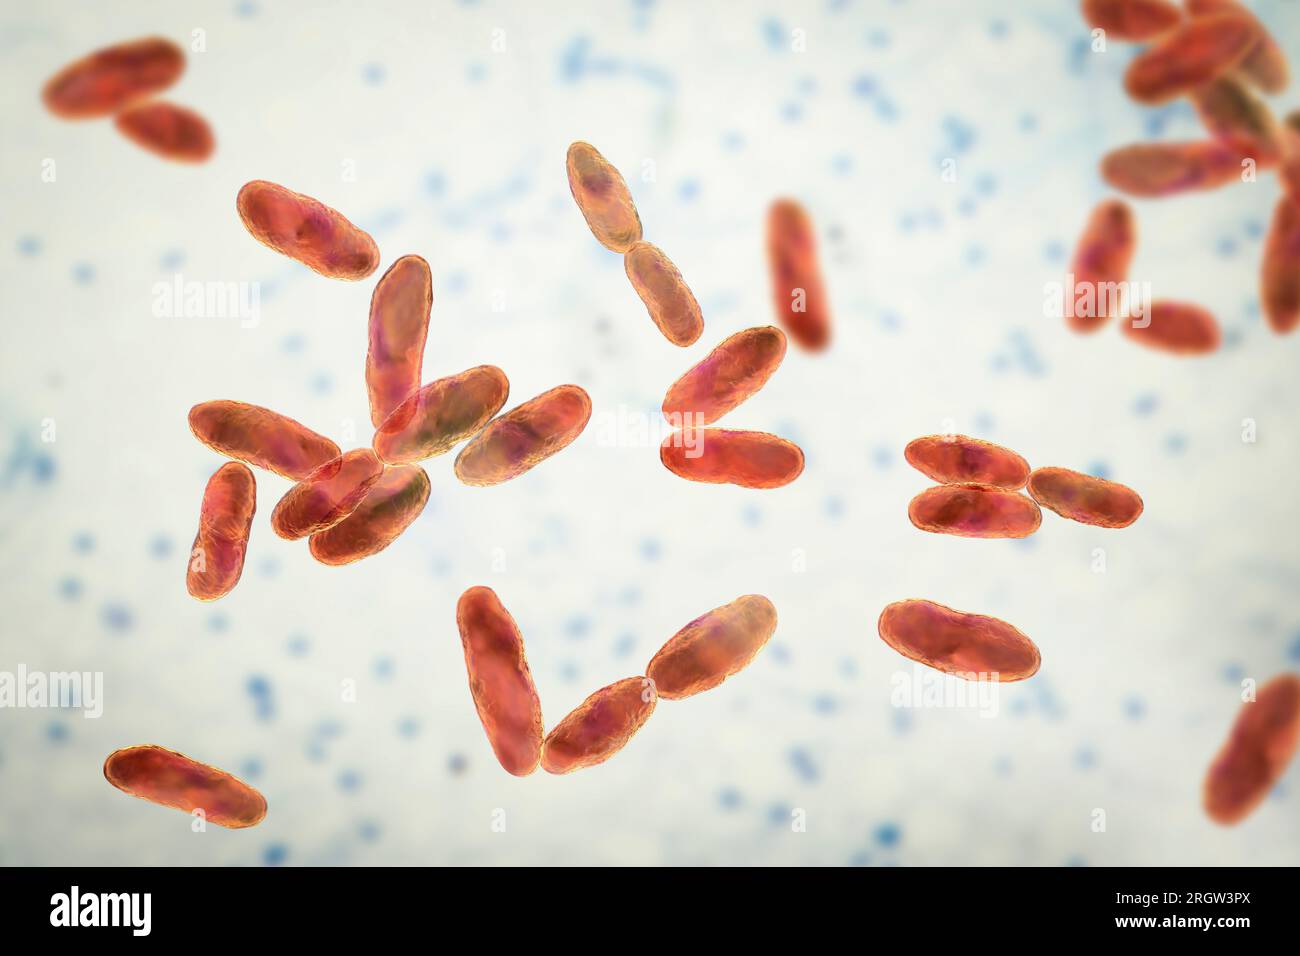 Aeromonas bacteria, illustration Stock Photo